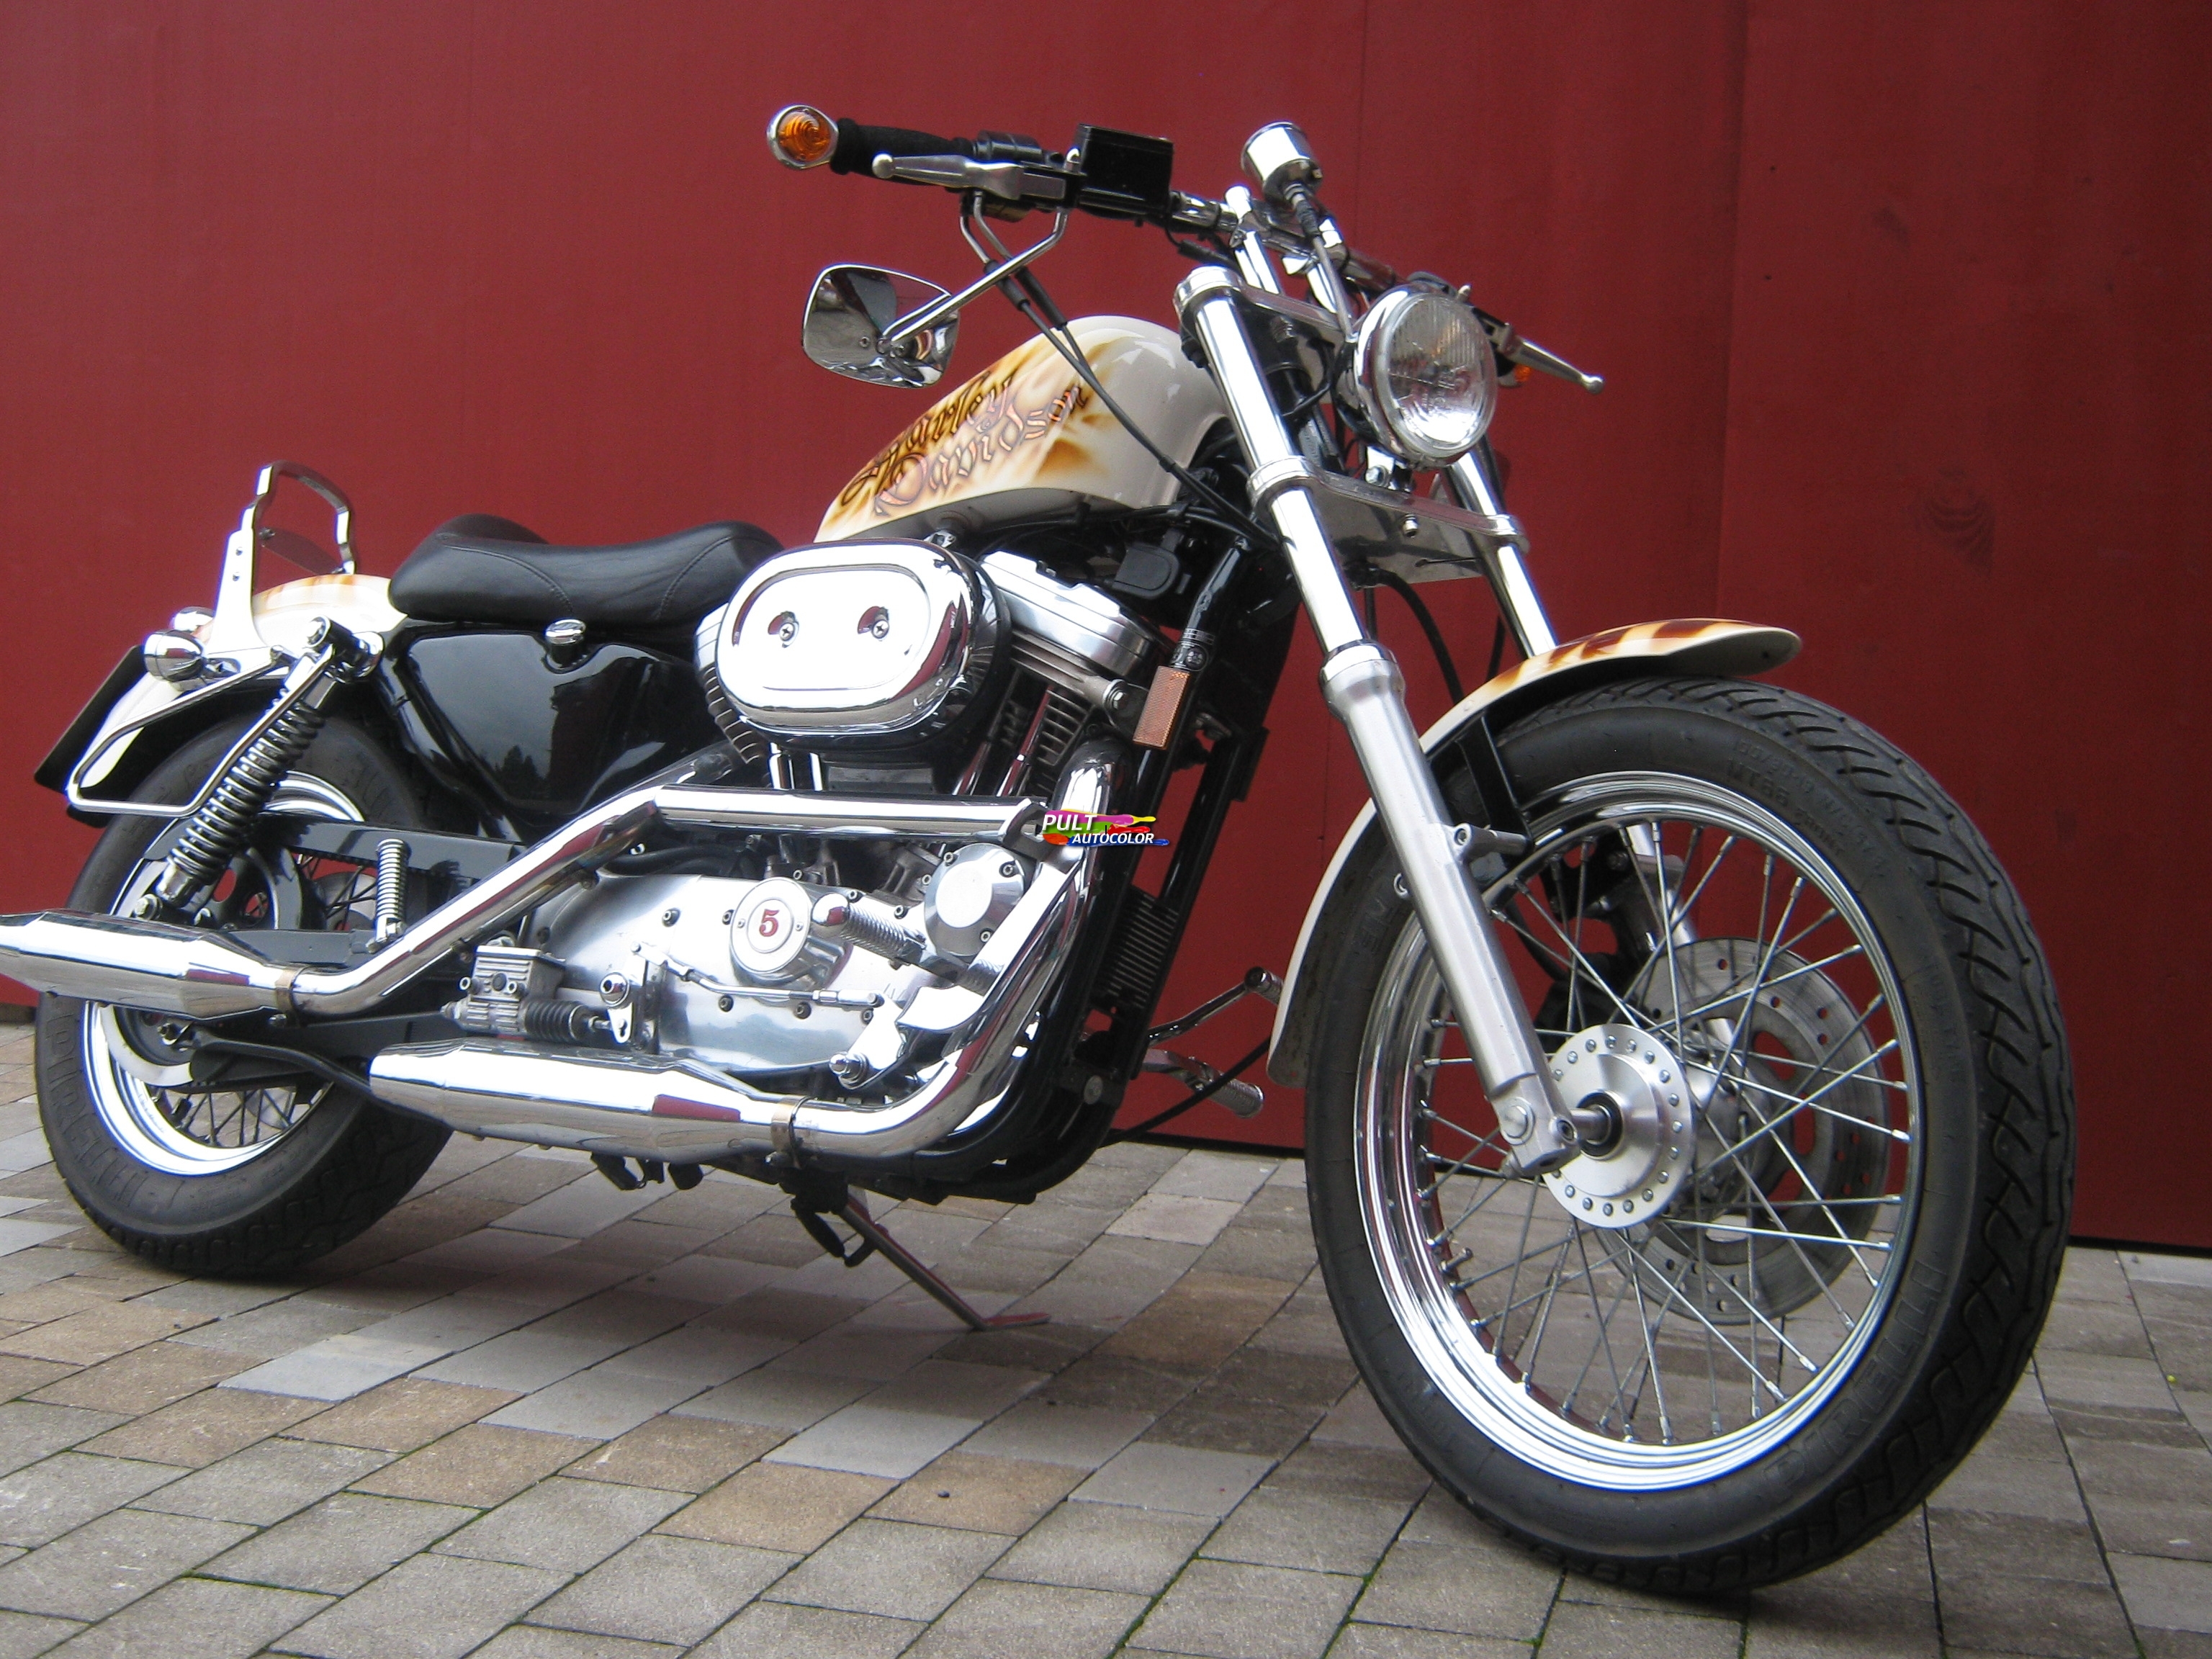 Harley Davidson Ganzlackierung.JPG